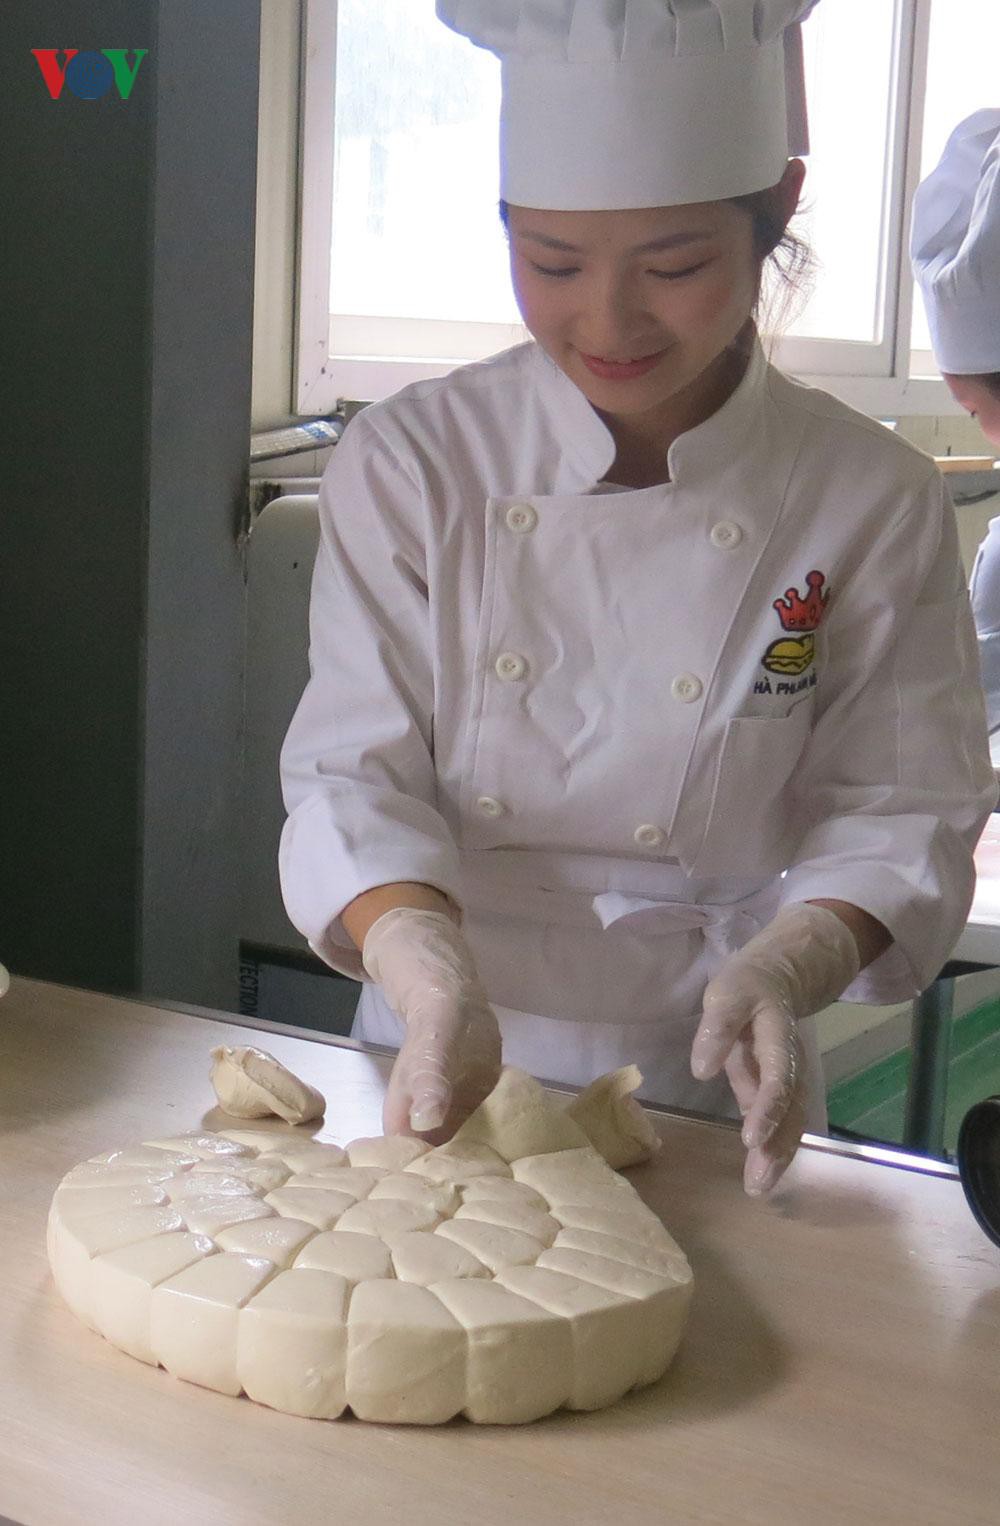 Mục sở thị xưởng sản xuất bánh mỳ Việt ở Hàn của cô chủ 9X xinh đẹp Ảnh 4